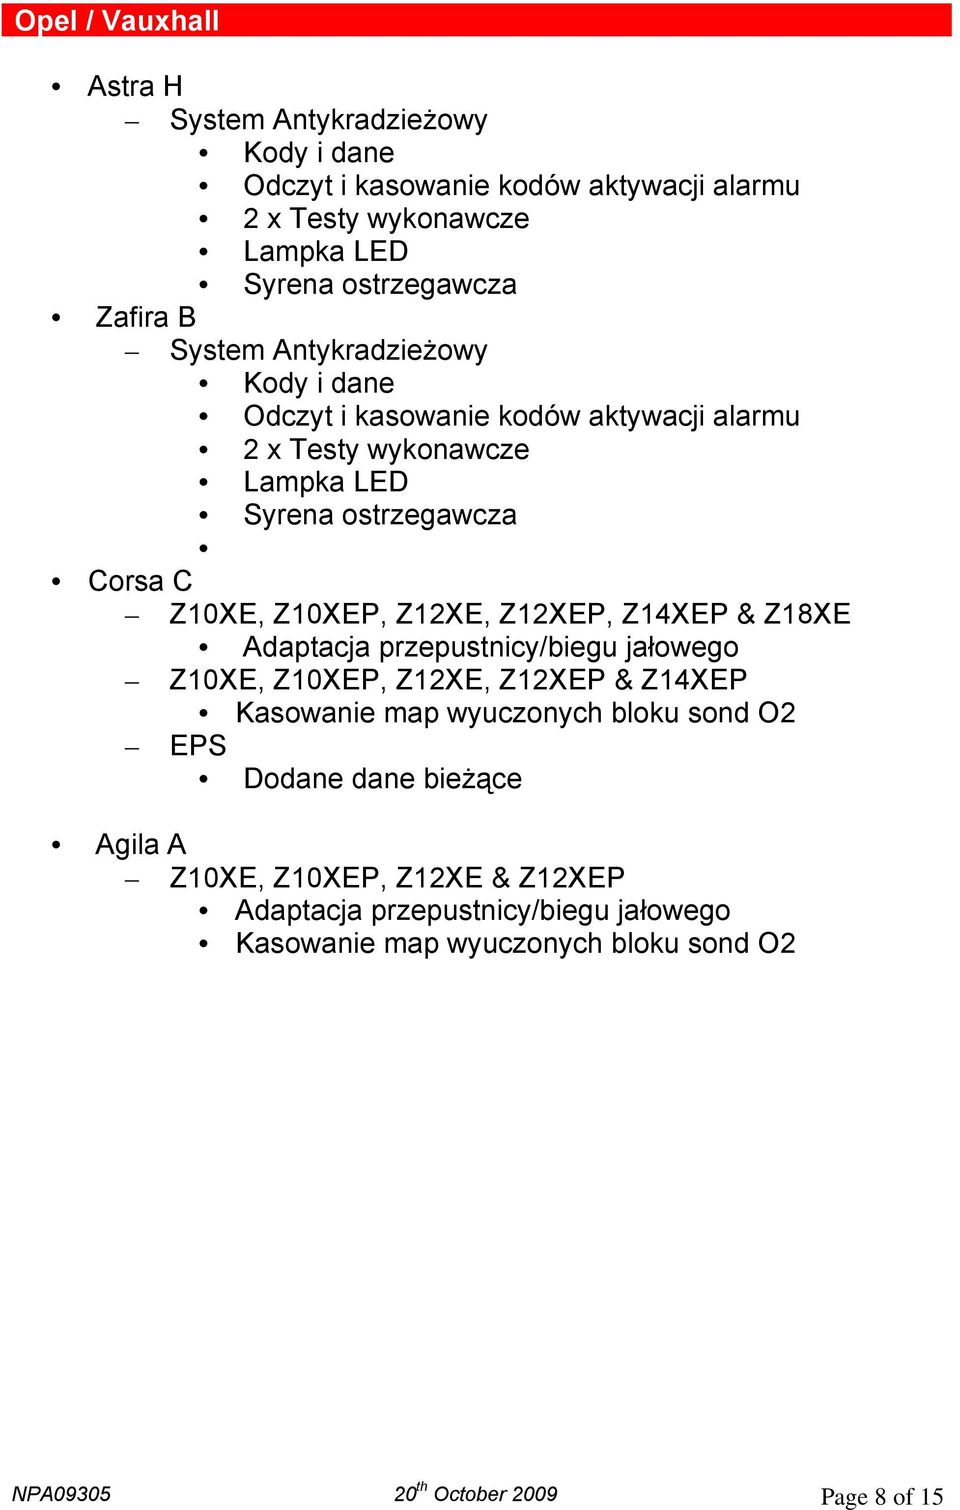 Z12XE, Z12XEP, Z14XEP & Z18XE Adaptacja przepustnicy/biegu jałowego Z10XE, Z10XEP, Z12XE, Z12XEP & Z14XEP Kasowanie map wyuczonych bloku sond O2 EPS Dodane